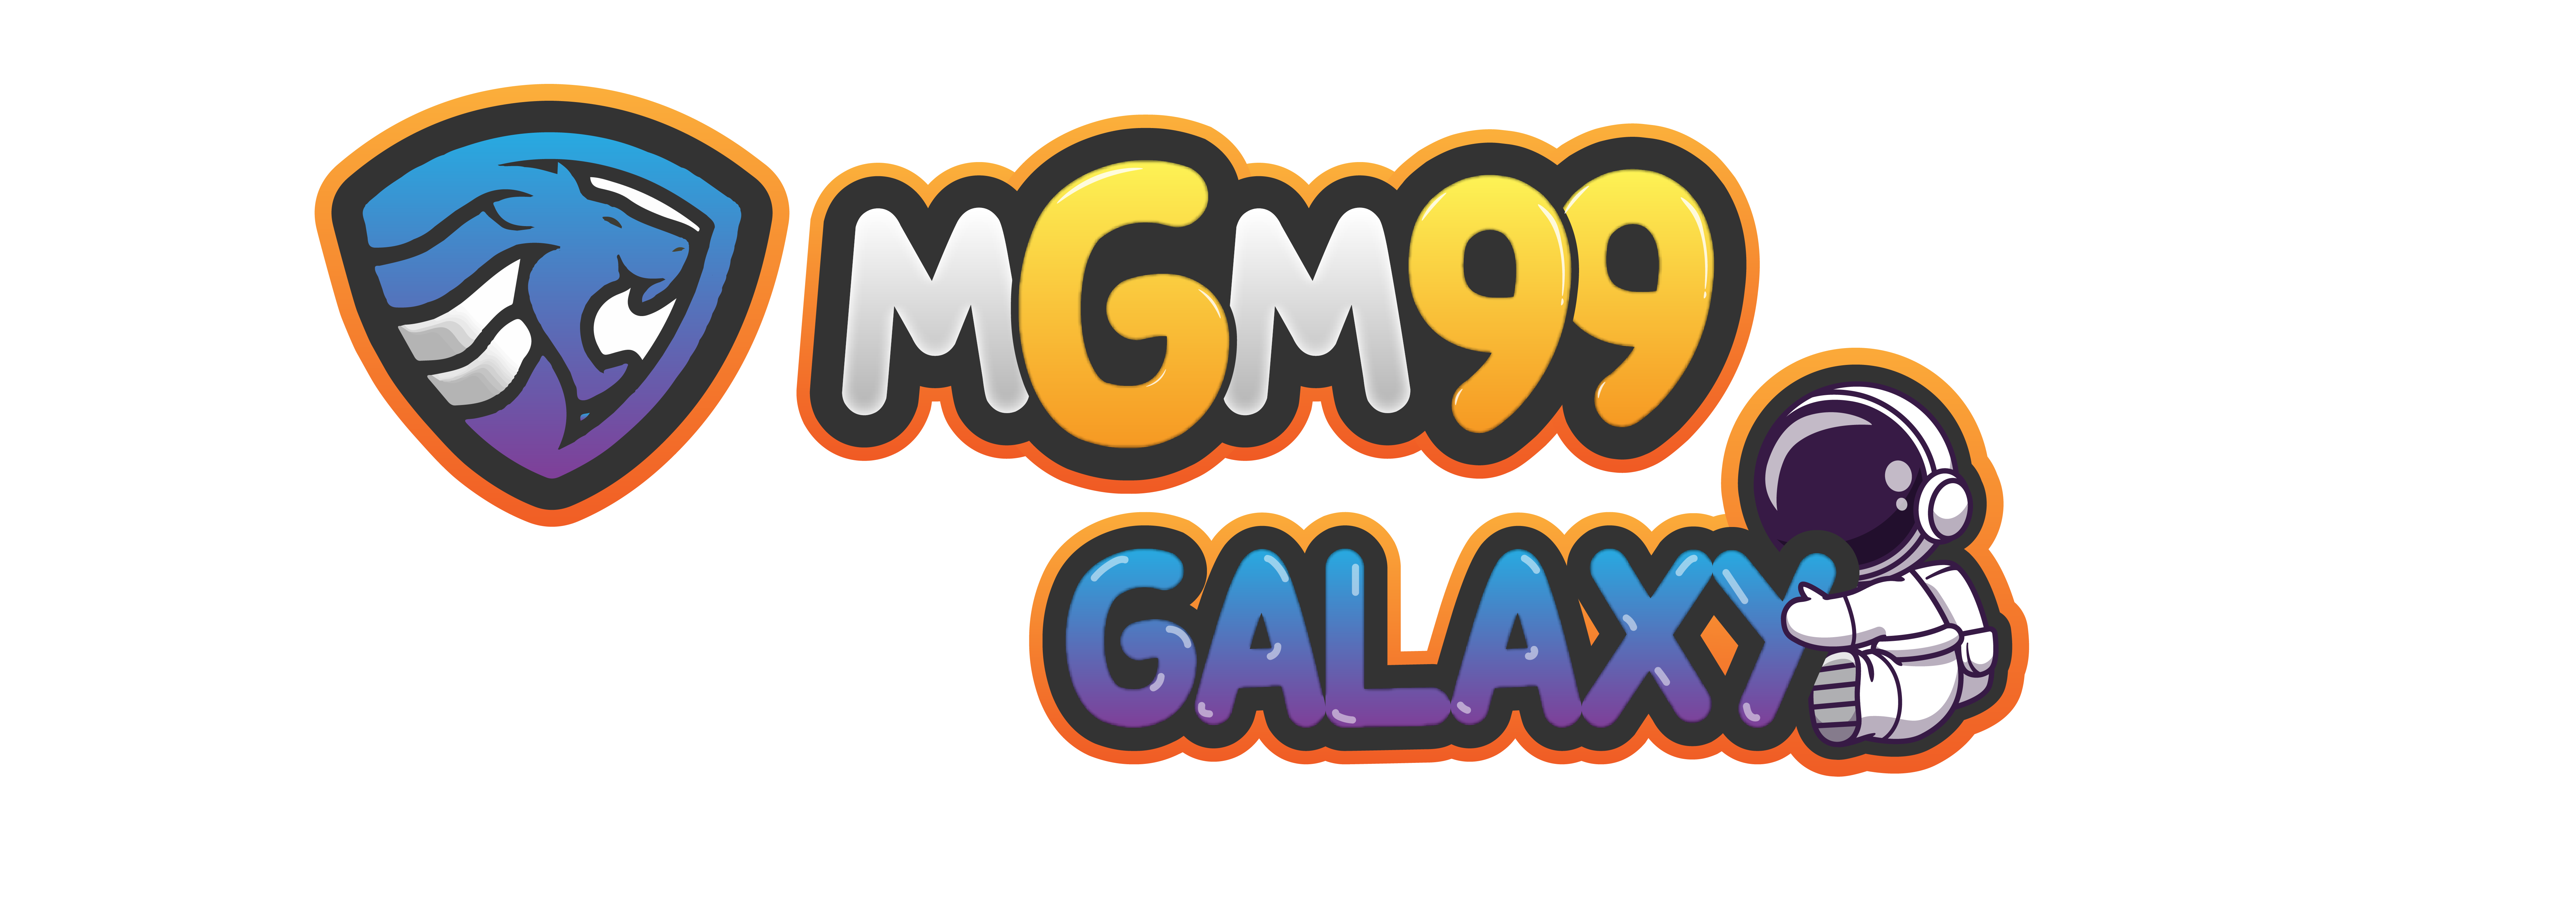 MGM99GALAXY